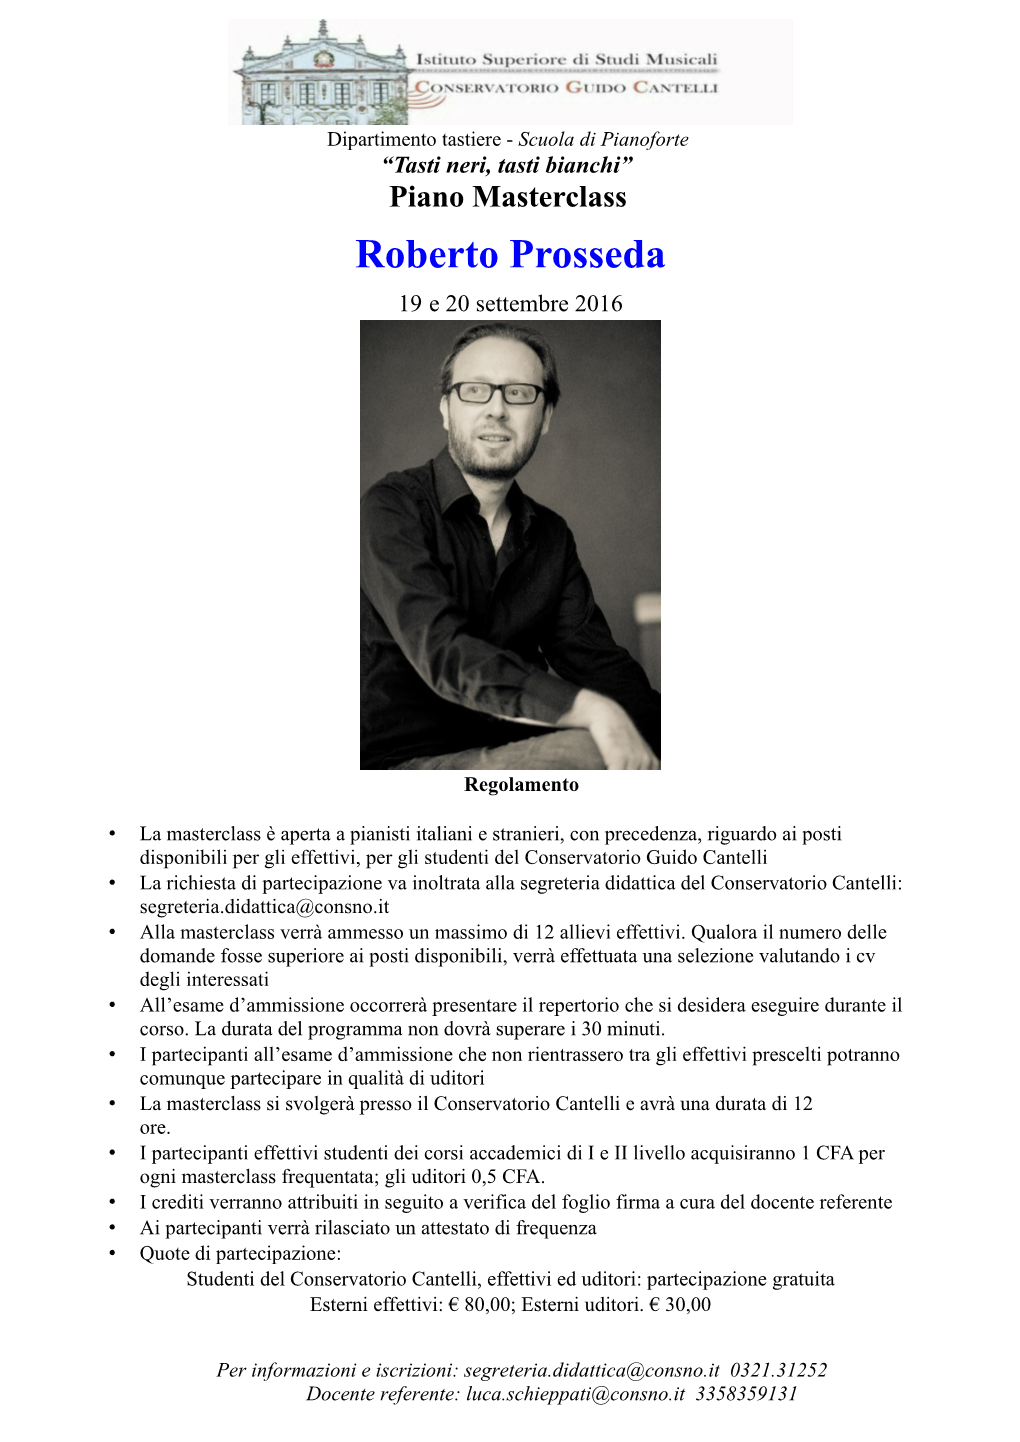 Piano Masterclass Roberto Prosseda 19 E 20 Settembre 2016